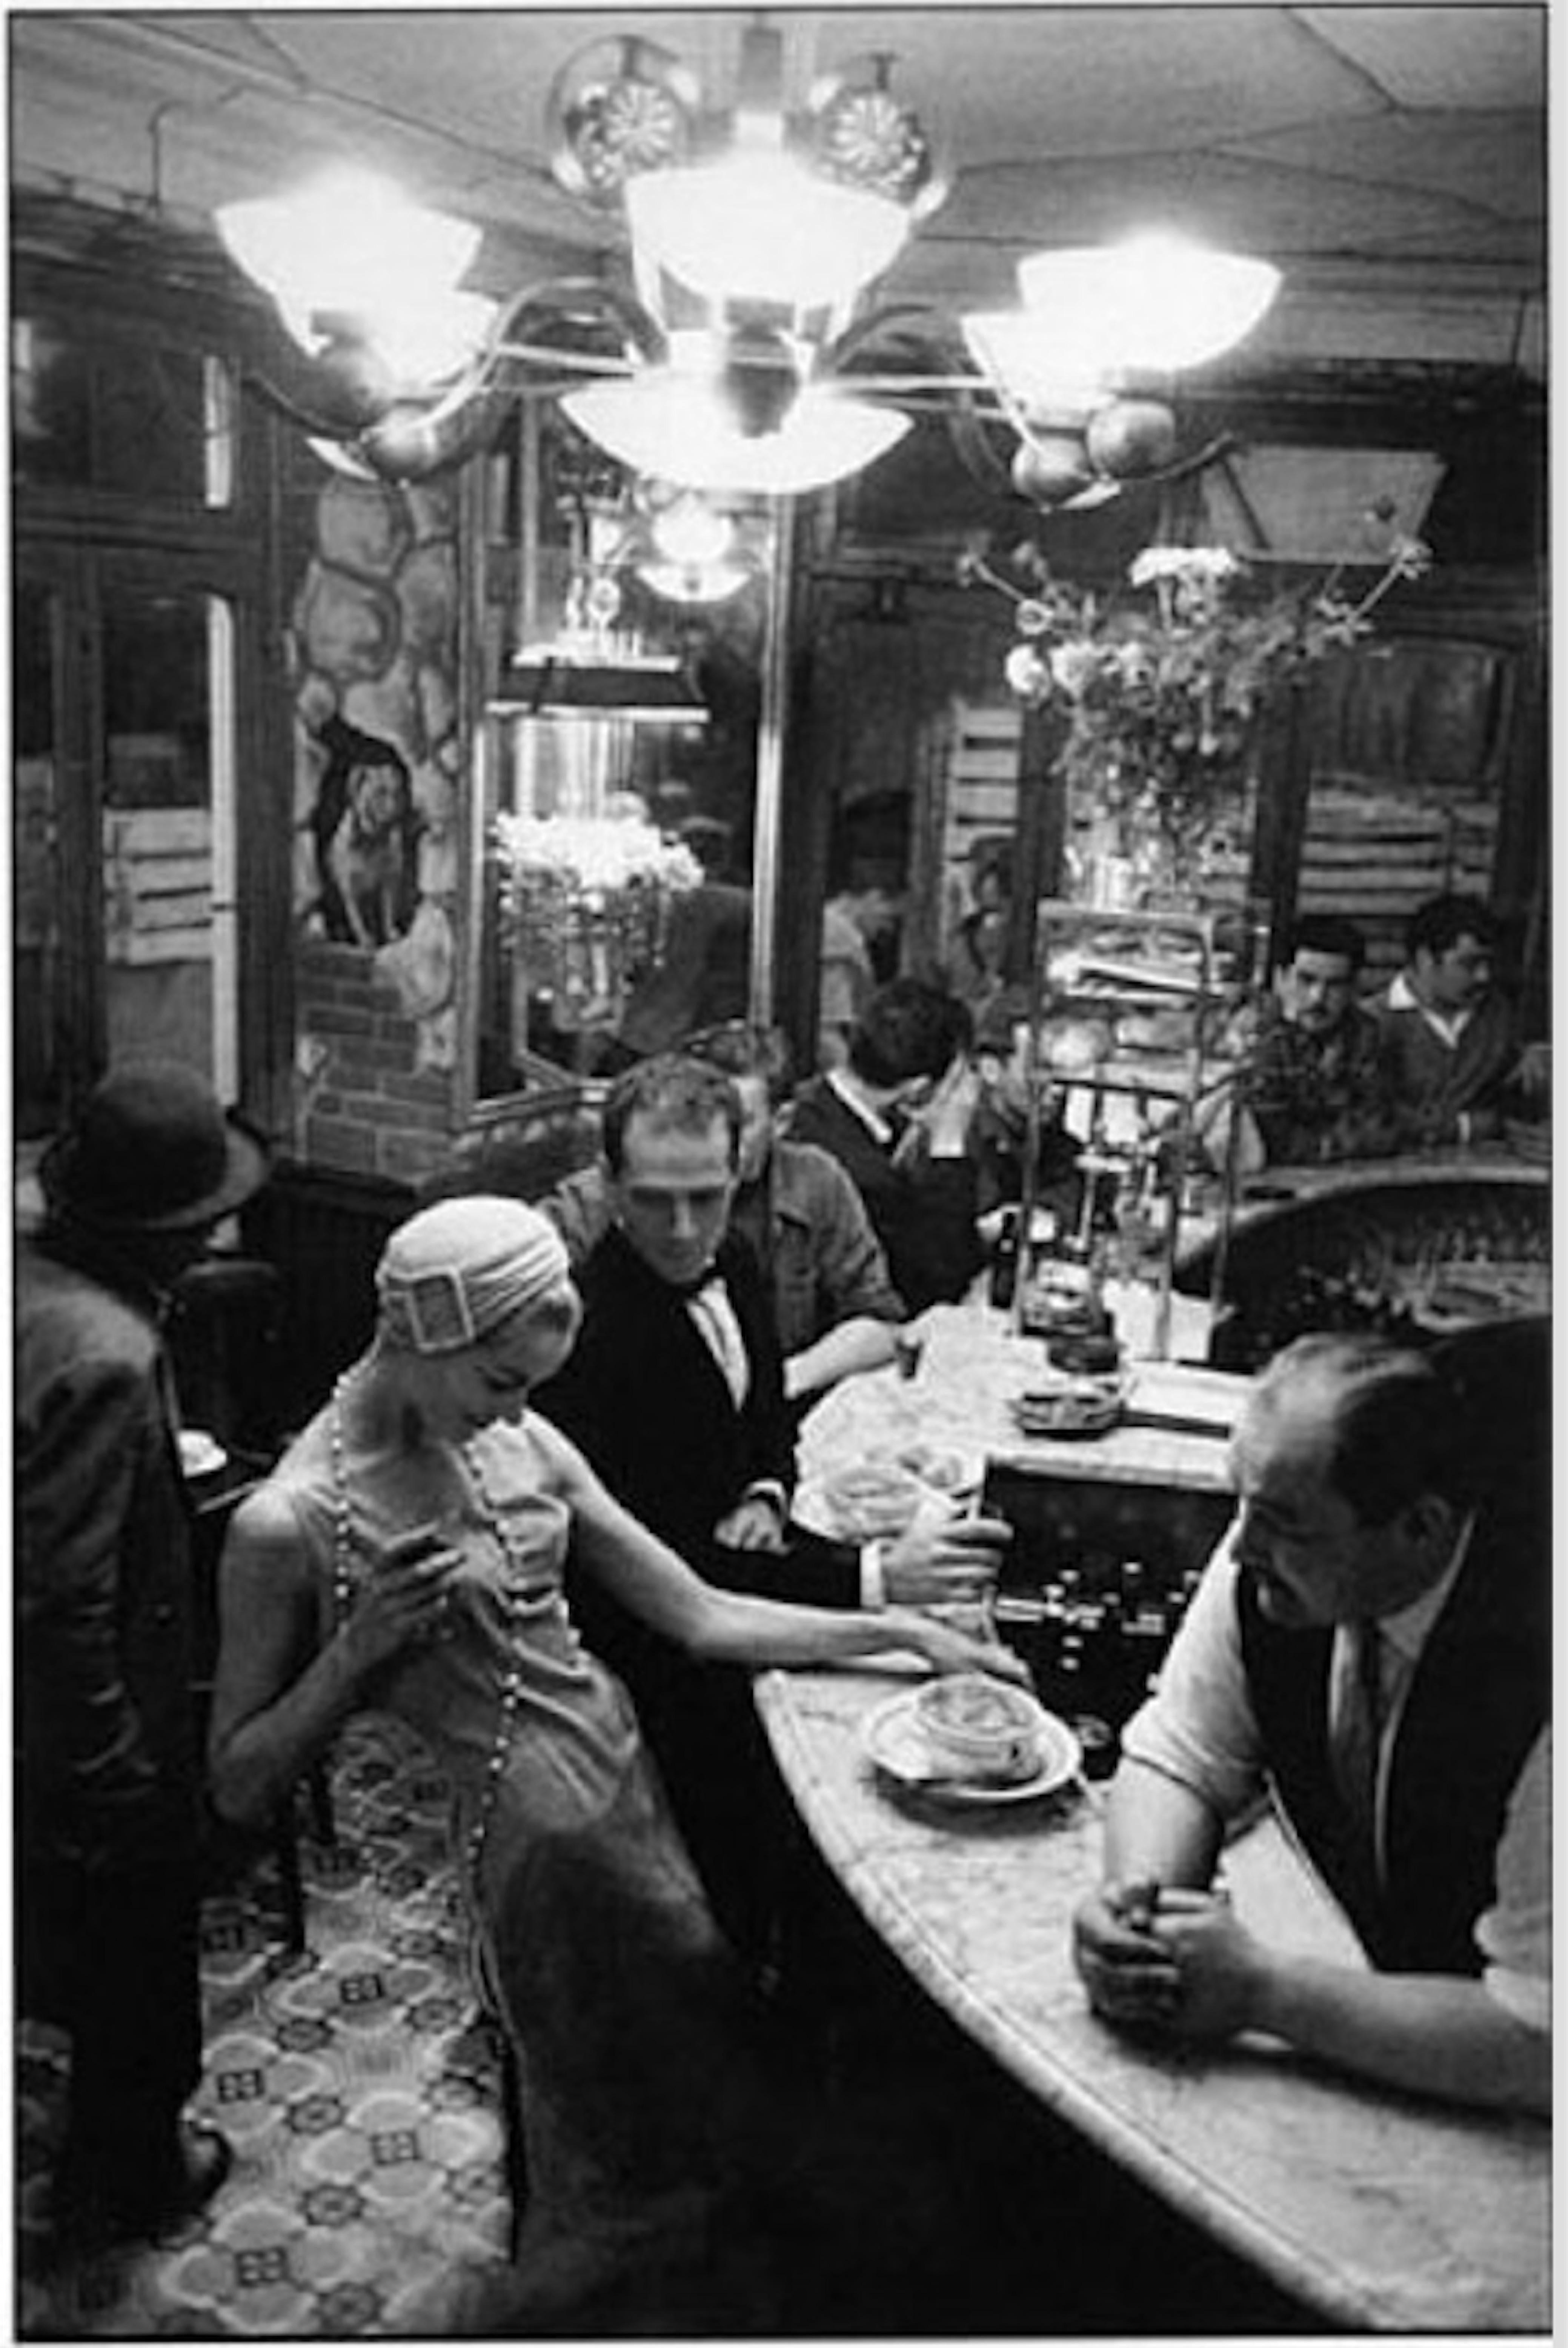 Frank Horvat Black and White Photograph - Paris "Le Chien Qui Fume"